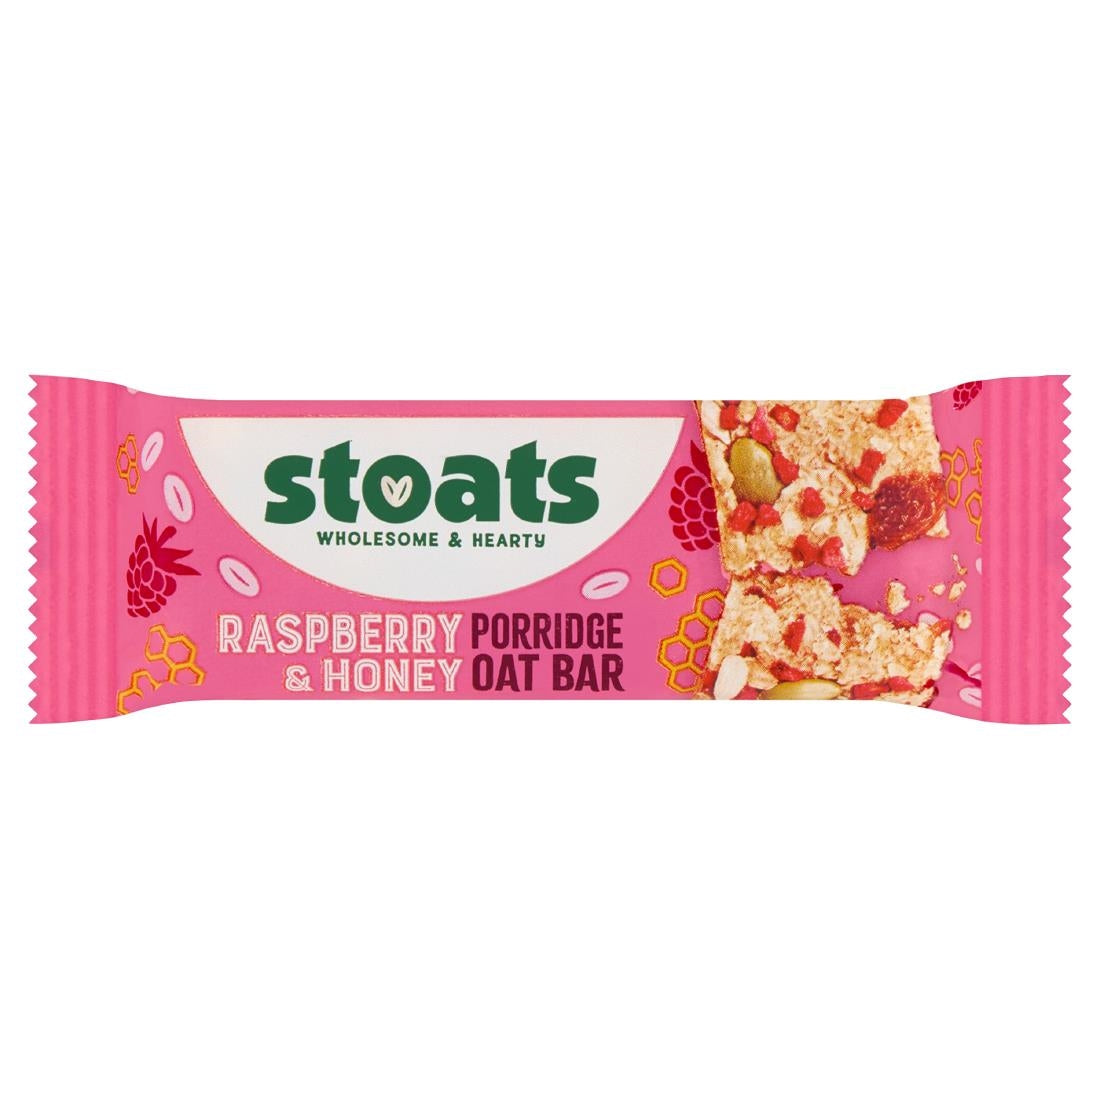 HS855 Stoats Raspberry & Honey Oat Bars 42g (Pack of 24)